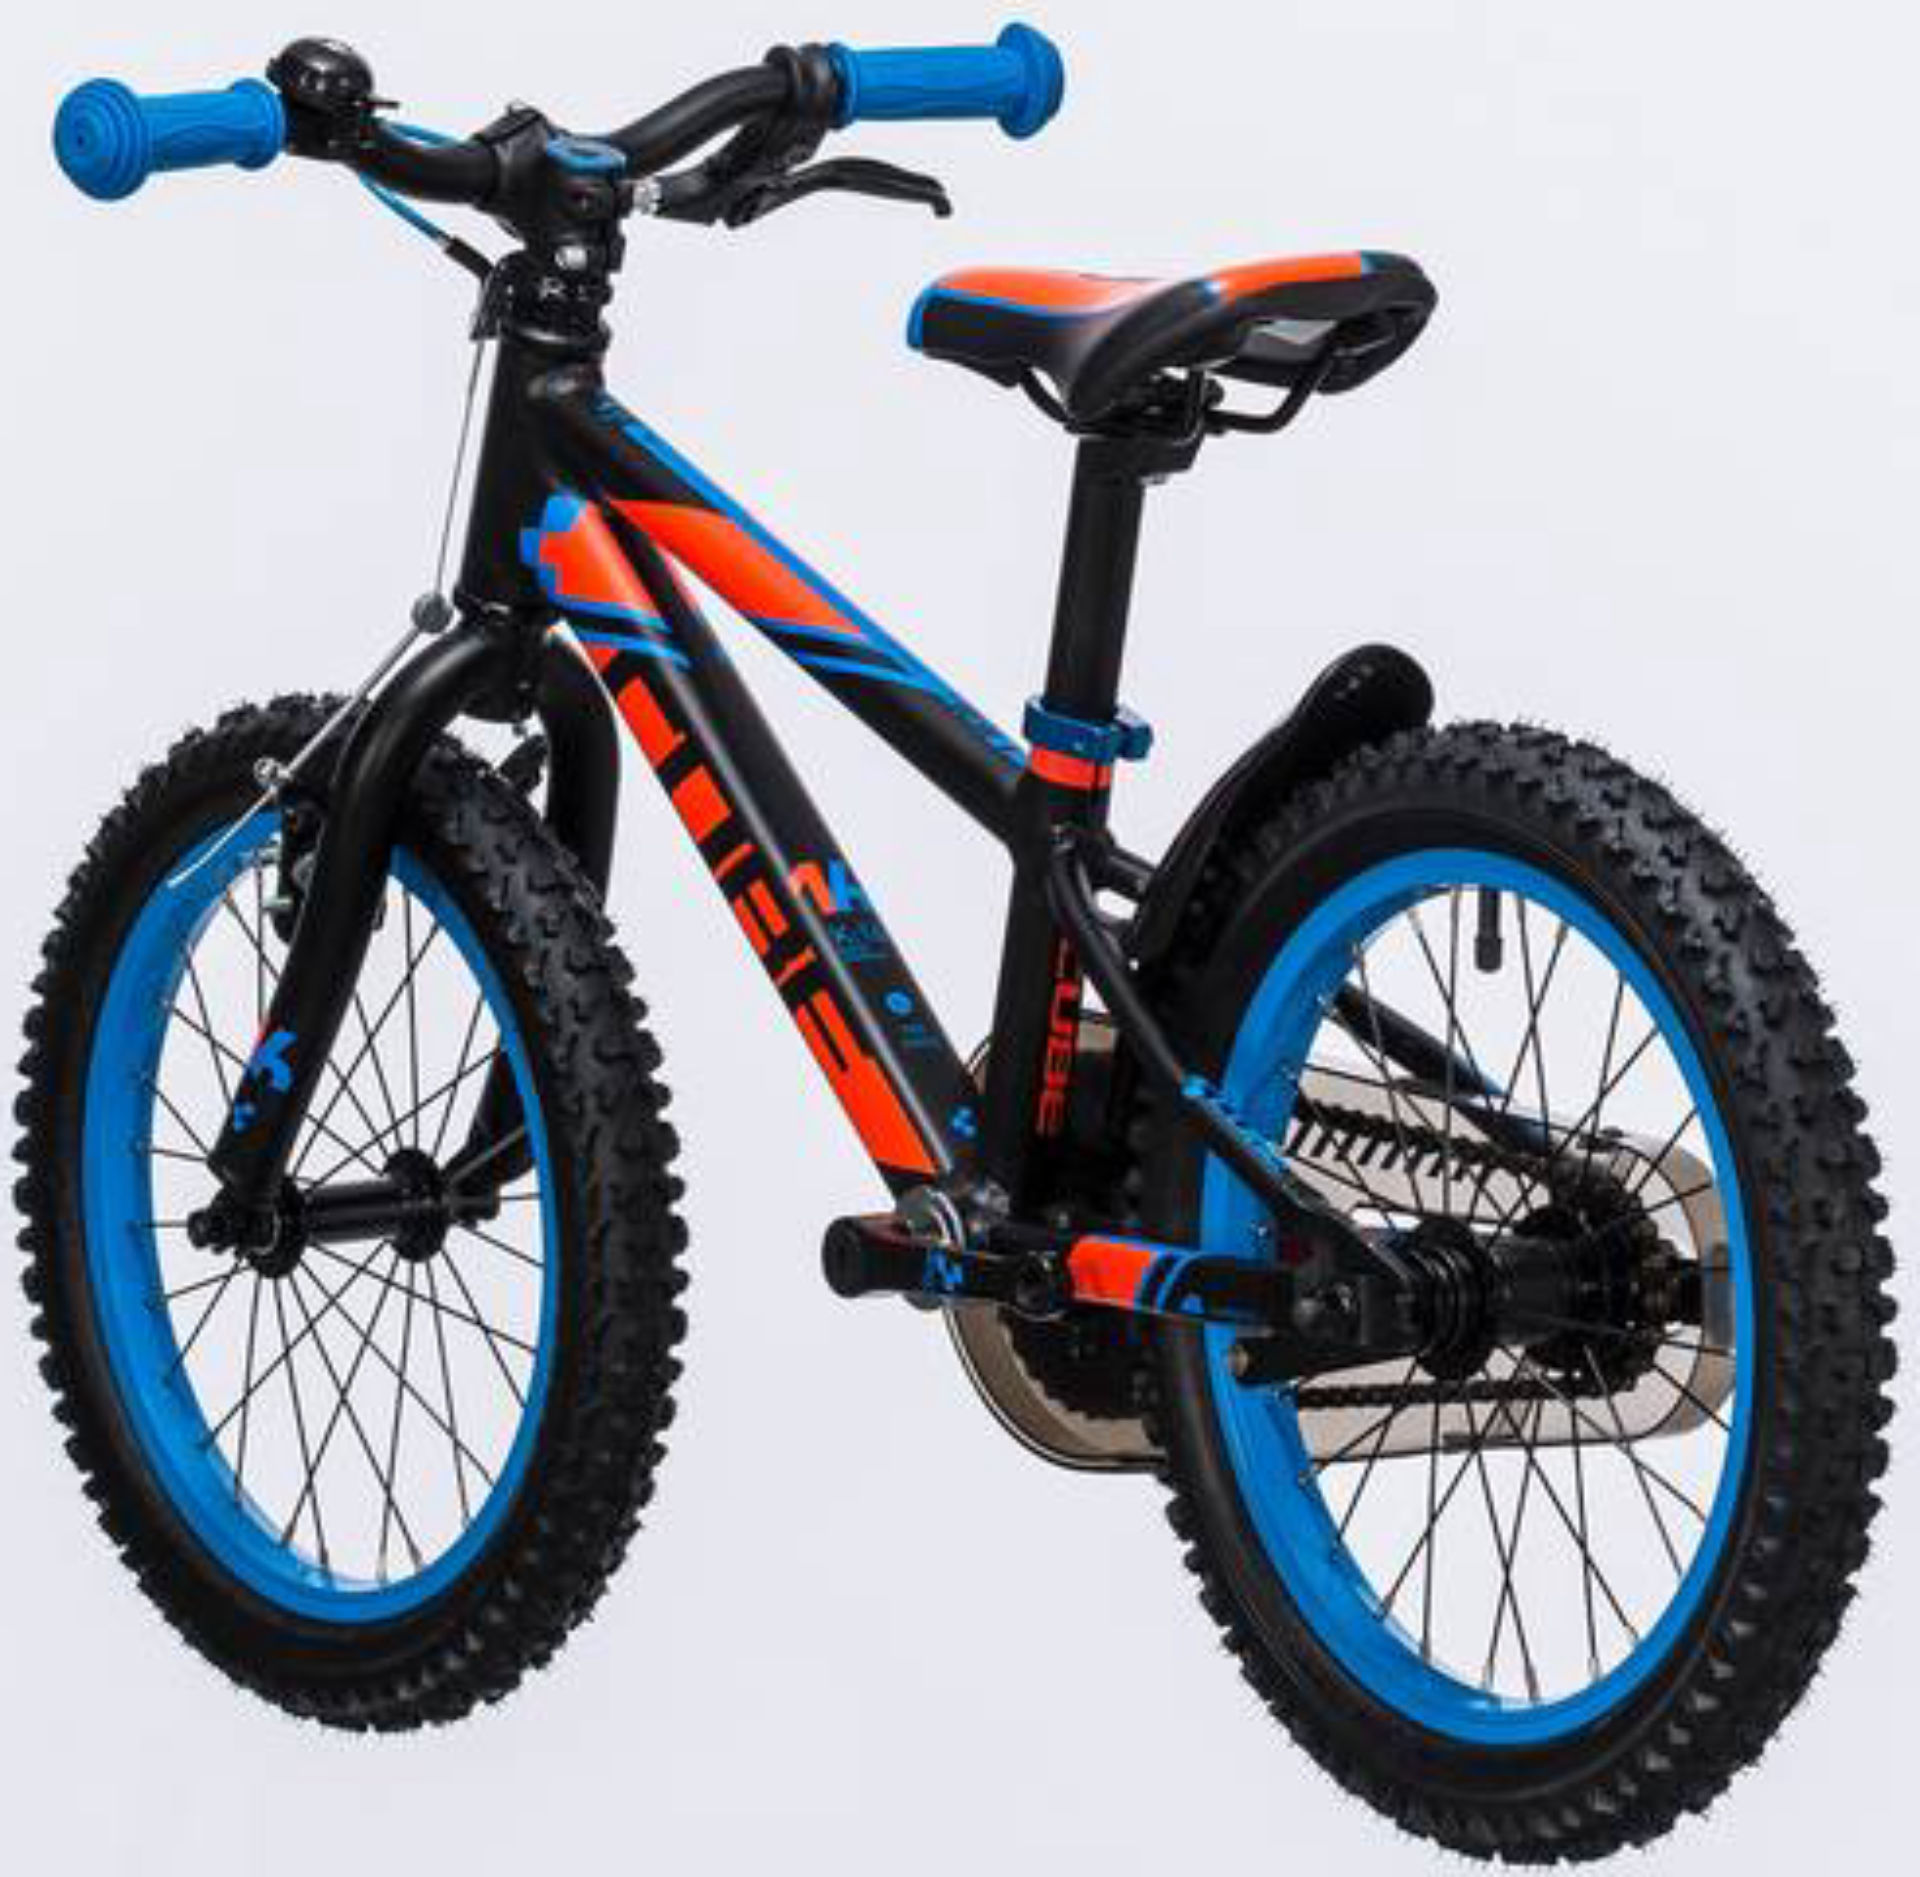 Кьюб кид. Велосипед Cube Kid 160. Детский велосипед Cube. Велосипед Cube синий.